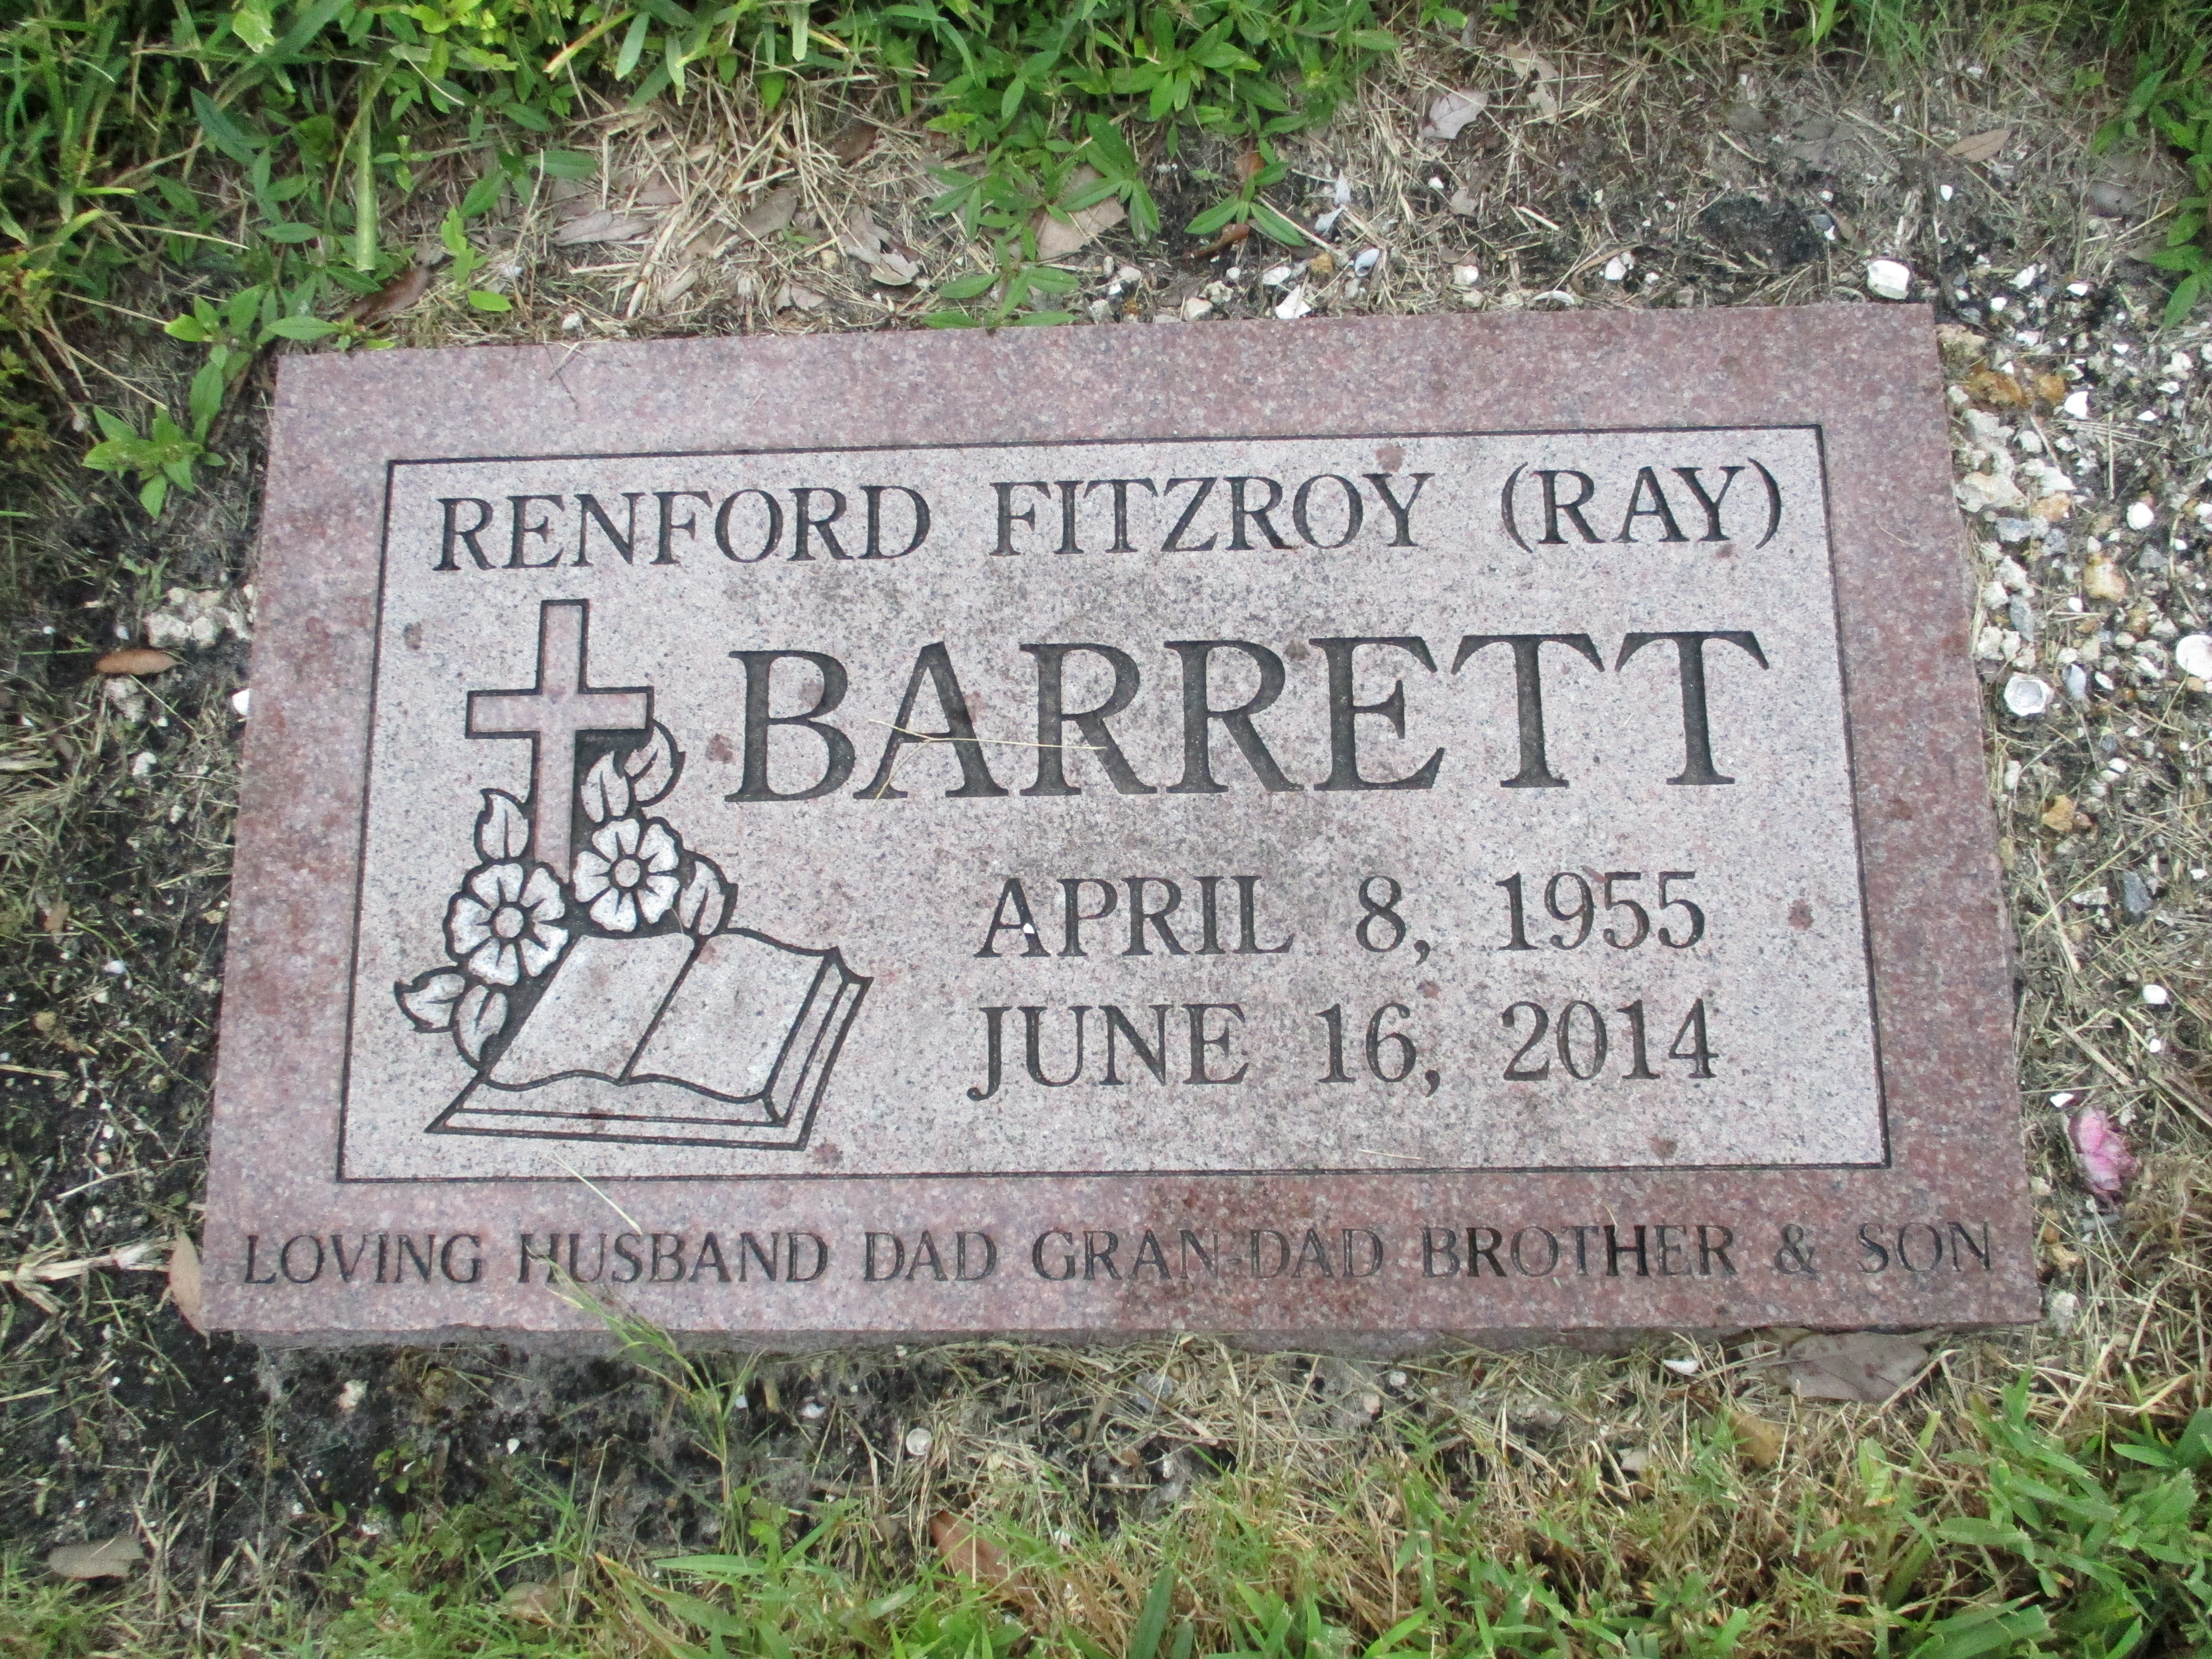 Renford Fitzroy "Ray" Barrett